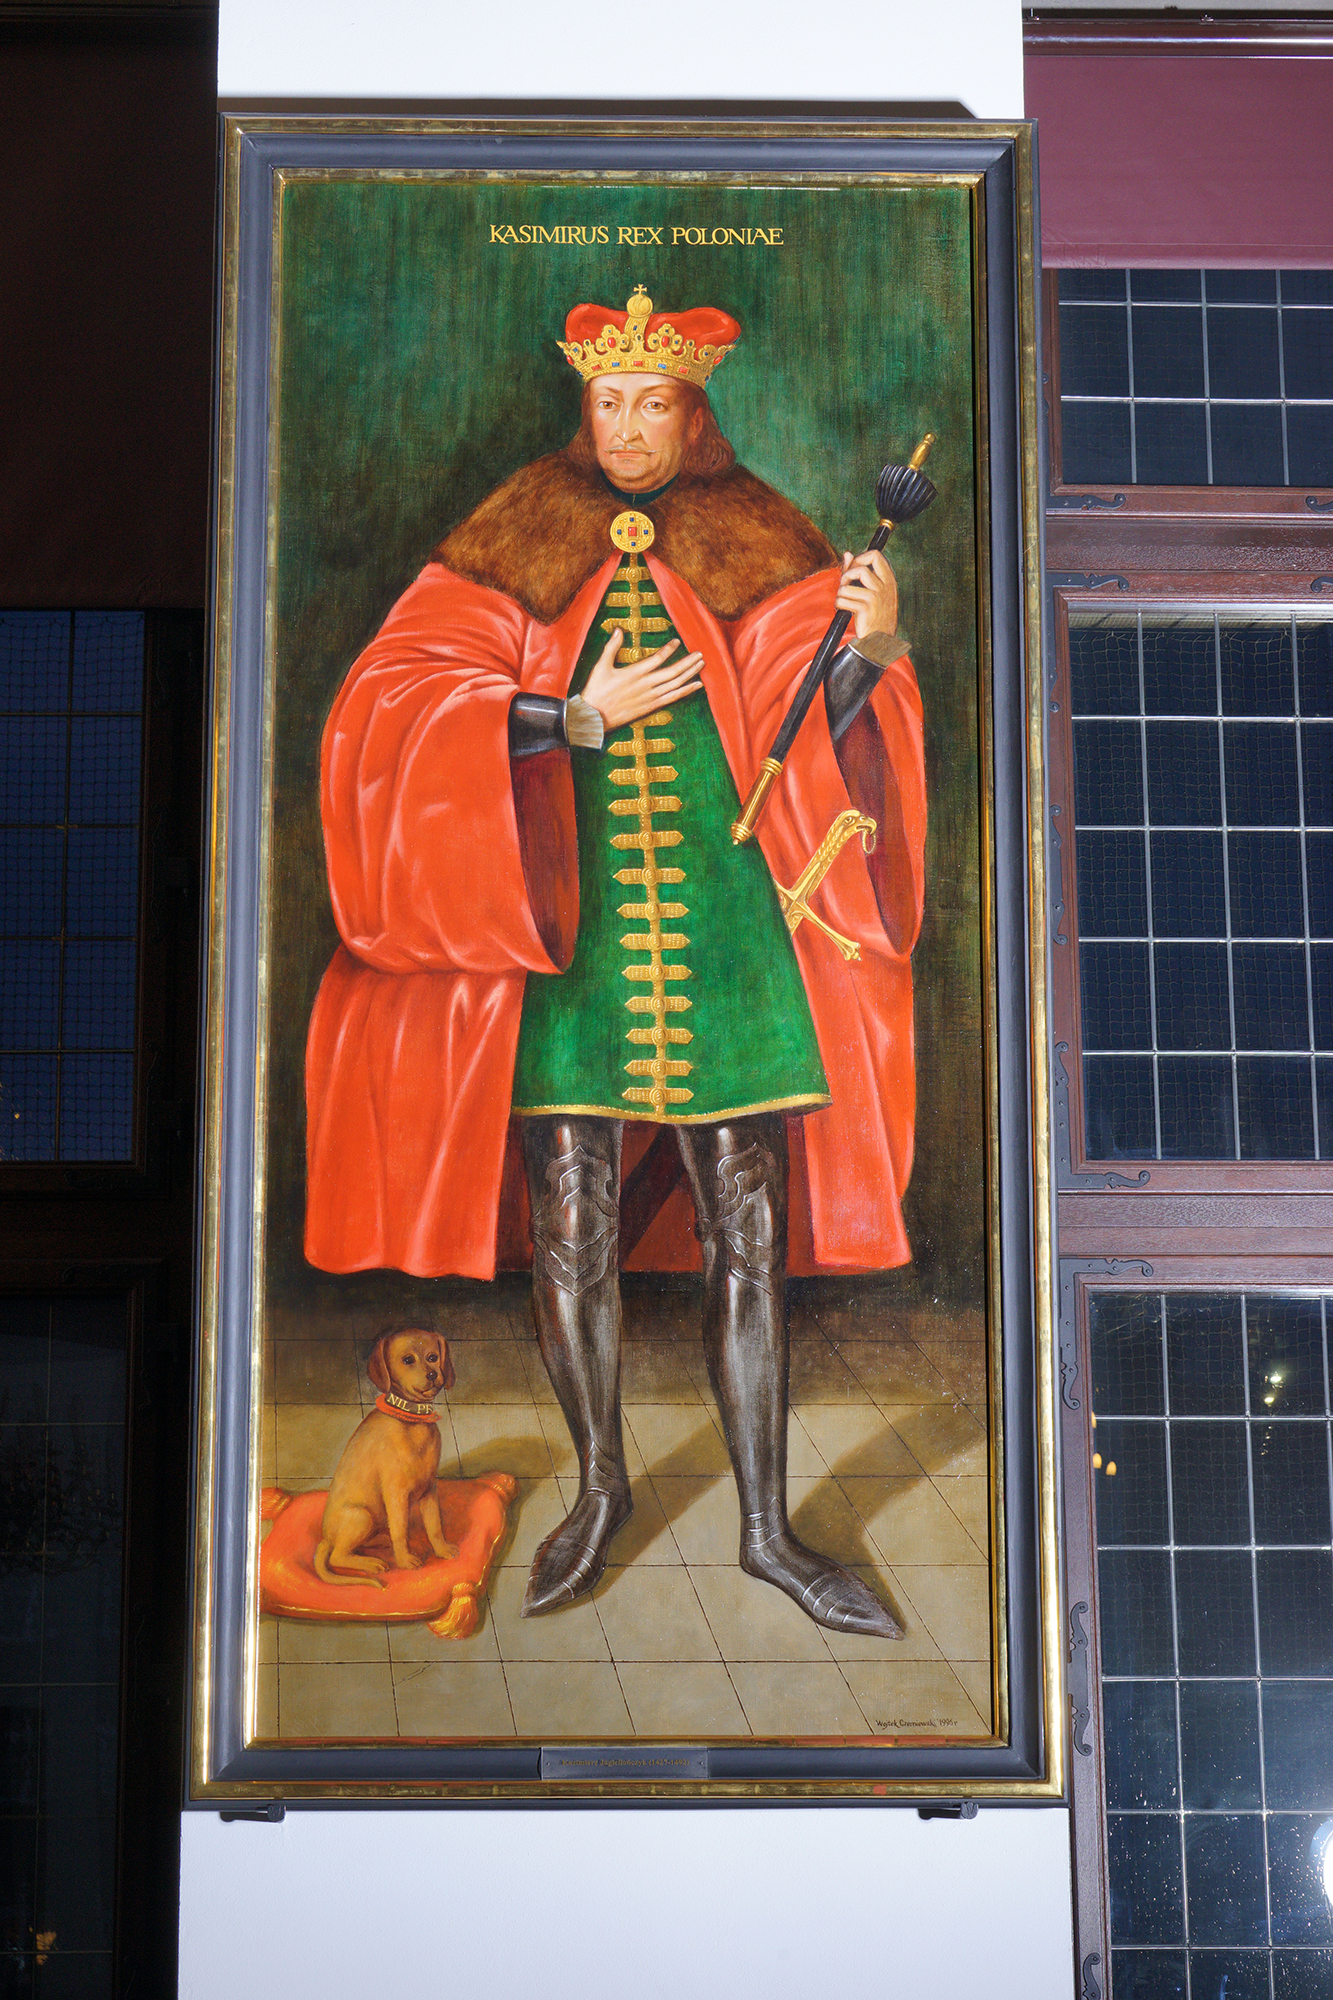 Sala Wielkiej Wety. Portret króla Kazimierza w koronie, z insygniami władzy. Obok na czerwonej poduszcze siedzi mały, brązowy piesek.